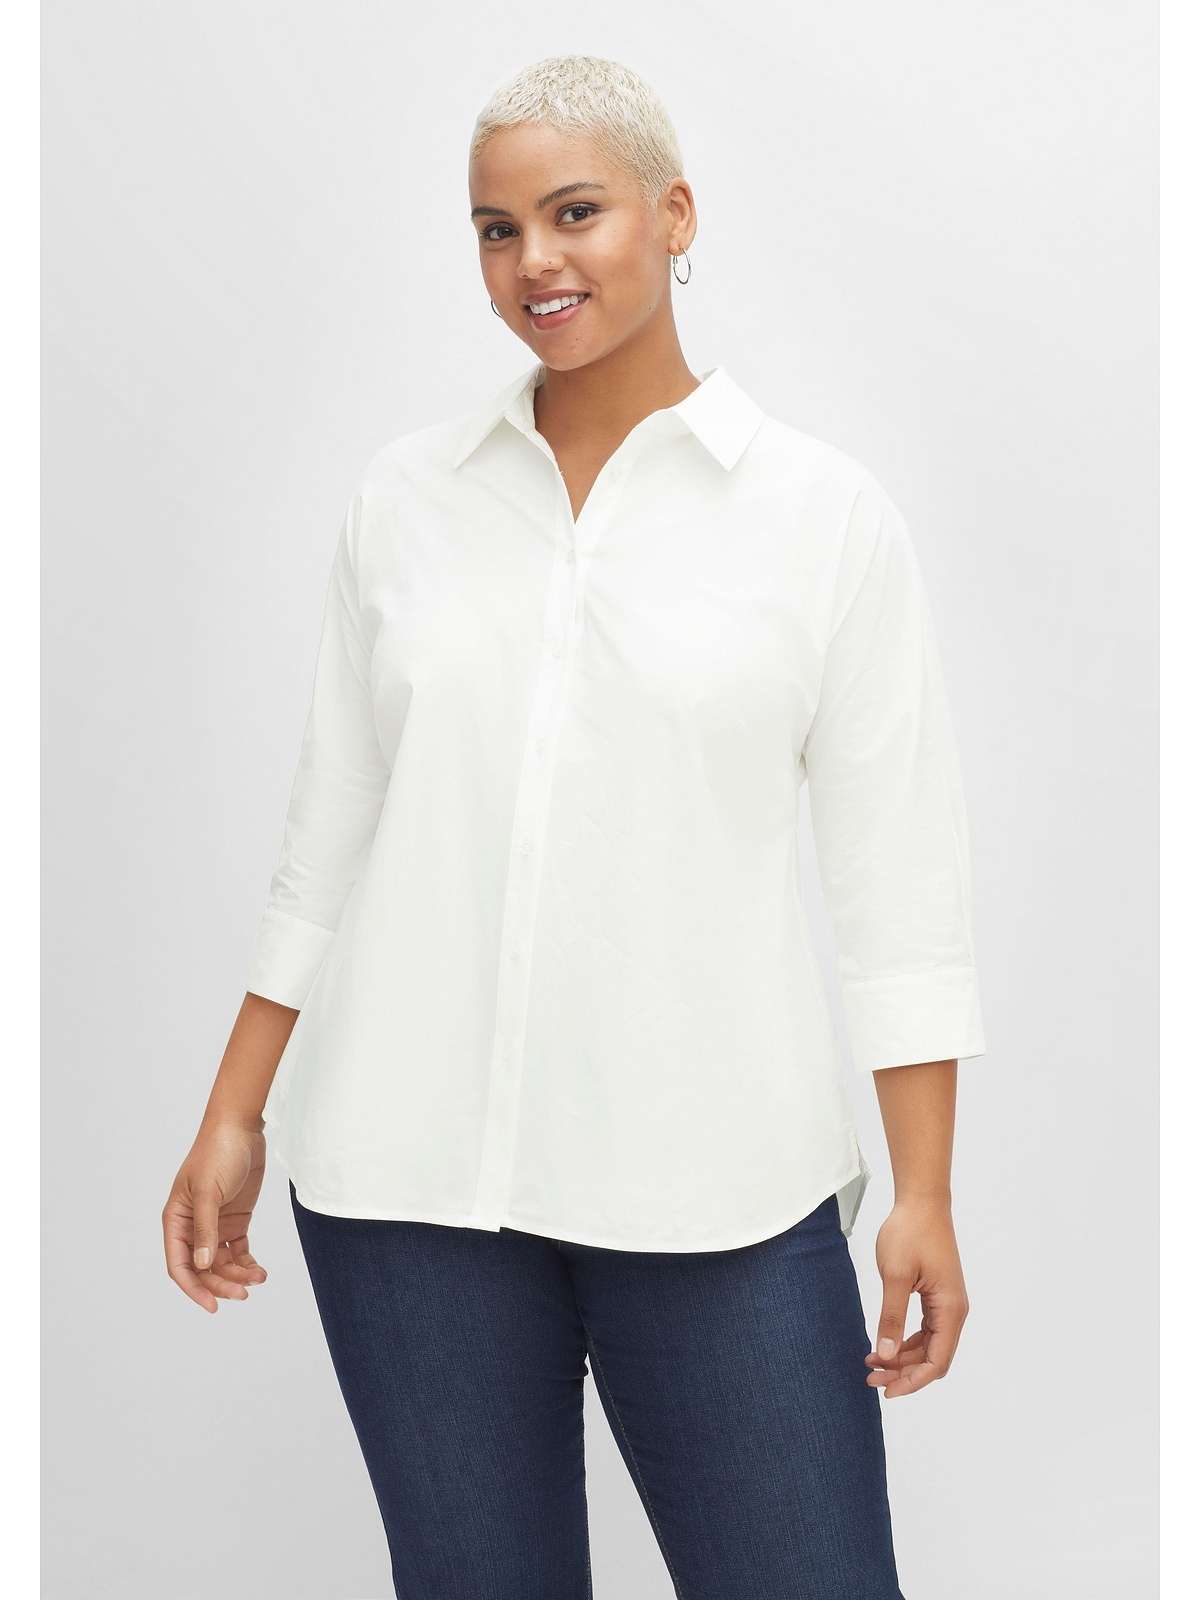 Блузка-рубашка с рукавами 3/4 из качественного поплина.